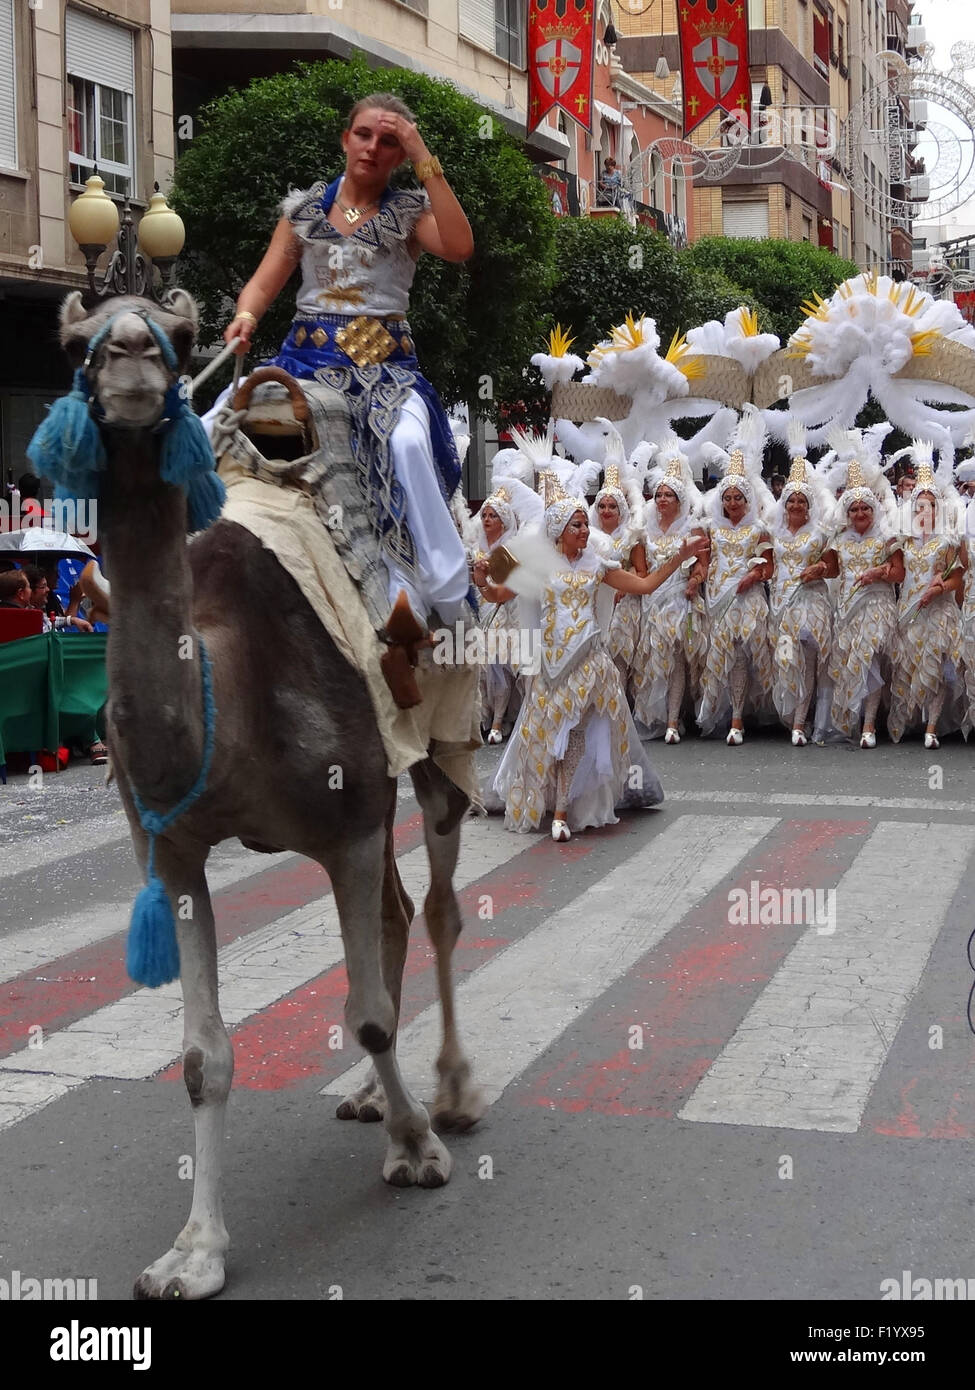 Villena, España. 5 Sep, 2015. La gente vestida con trajes tradicionales  durante el desfile de Moros y Cristianos en Villena, en España, el 5 de  septiembre de 2015. Esta tradicional fiesta anual,